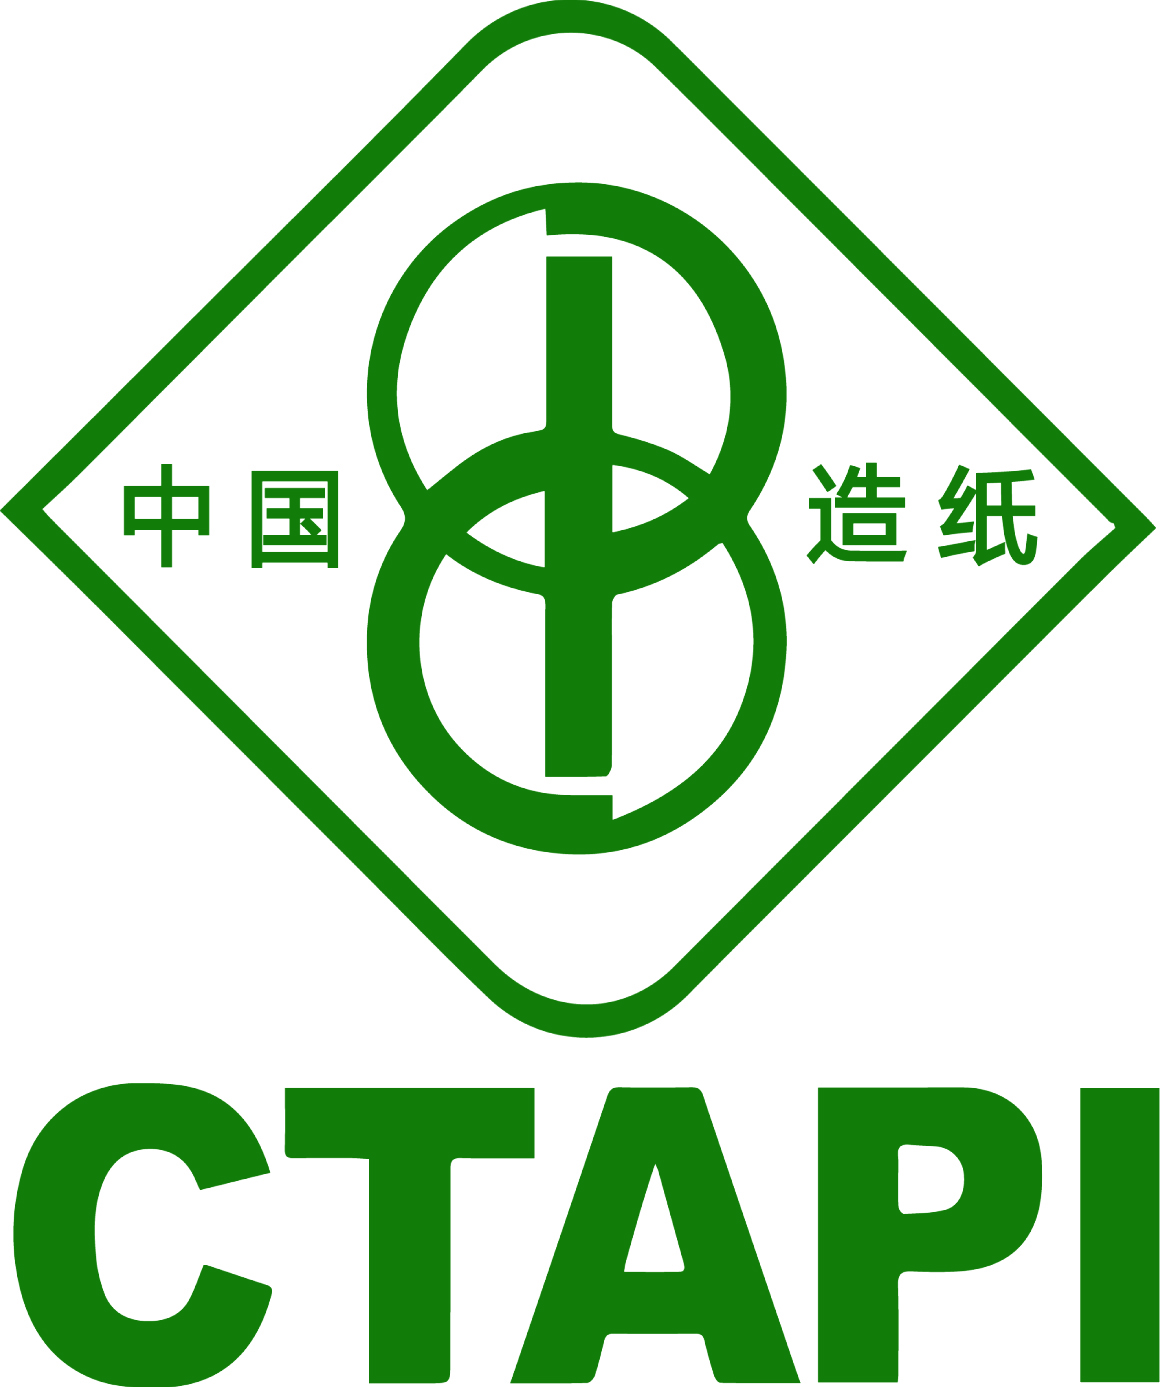 中国造纸学会logo.jpg